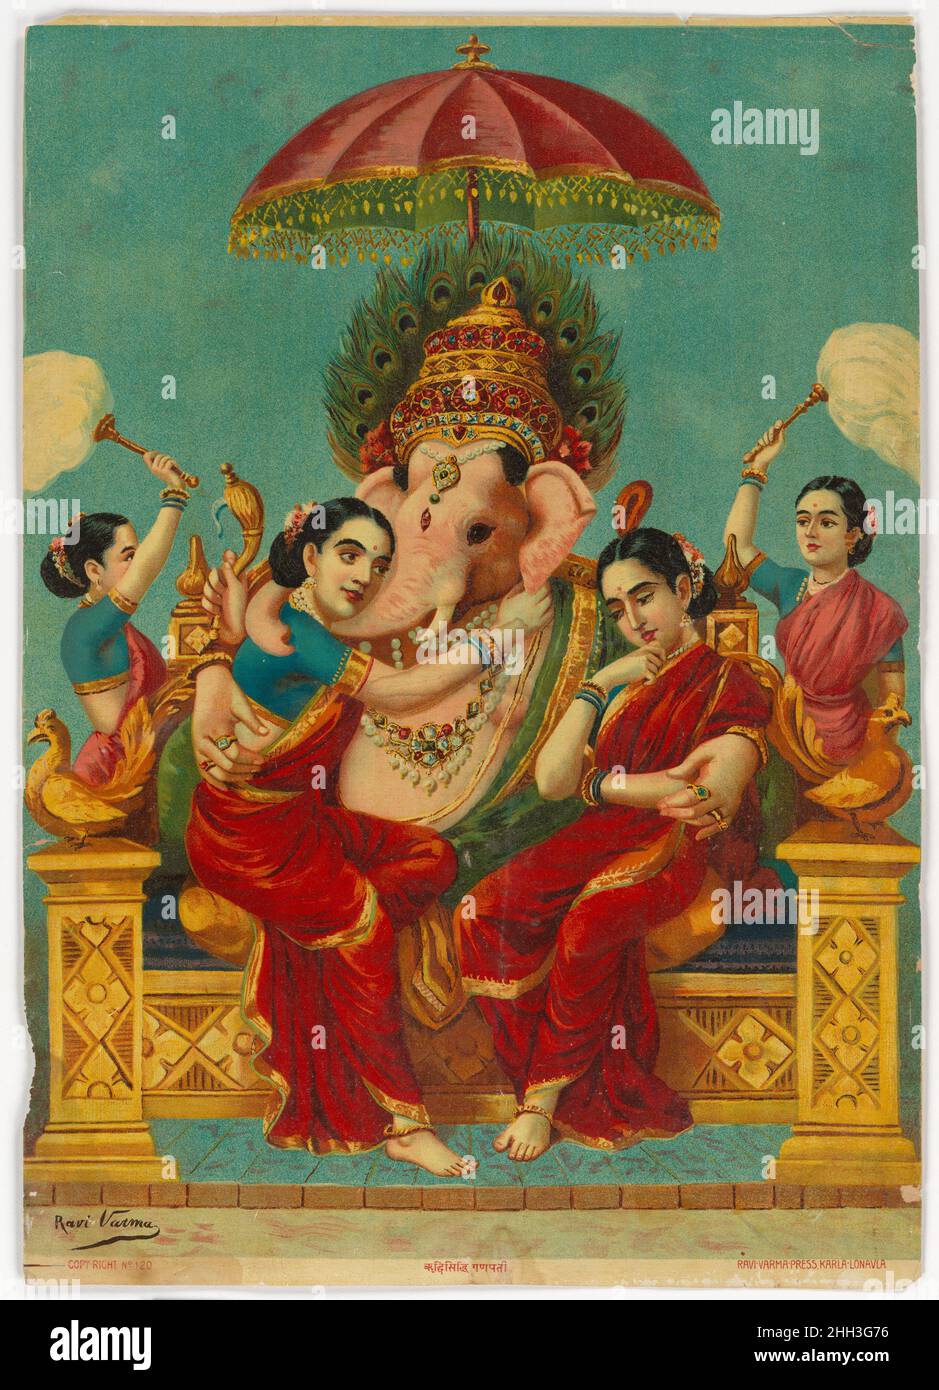 Ganapati con i suoi consorti Riddhi e Siddhi ca. 1900–15 India Ganesha, figlio di Shiva e Parvati, è adorato da tutti gli Indù come protettore di coloro che si imbarcano in nuove imprese, siano esse imprese, studenti o viaggiatori. Tutti gli eventi pubblici e le performance iniziano con un omaggio a Lord Ganesha per assicurarsi il suo boon di successo. In questa riccamente colorata impressione Ganesha è raffigurato introniato su un elaborato trono-sedile architettonico, abbracciando i suoi due amati consorti, Riddhi e Siddhi. L'artista Ravi Varma onora Ganesha con tutte le regalia necessarie di corona, ombrellone e female Foto Stock